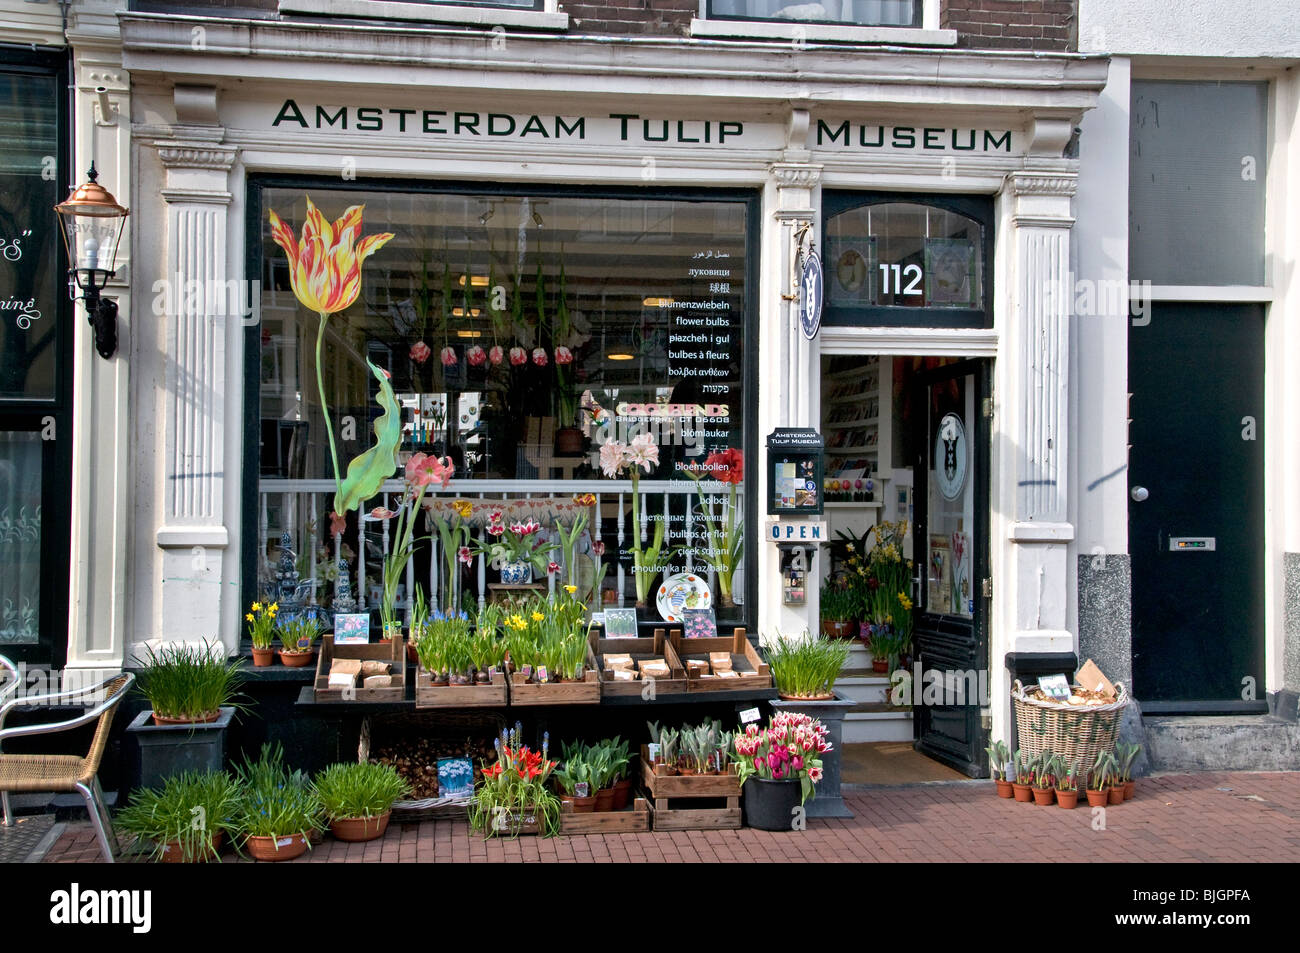 Musée de la tulipe d'Amsterdam aux Pays-Bas Jordaan Flower shop Banque D'Images